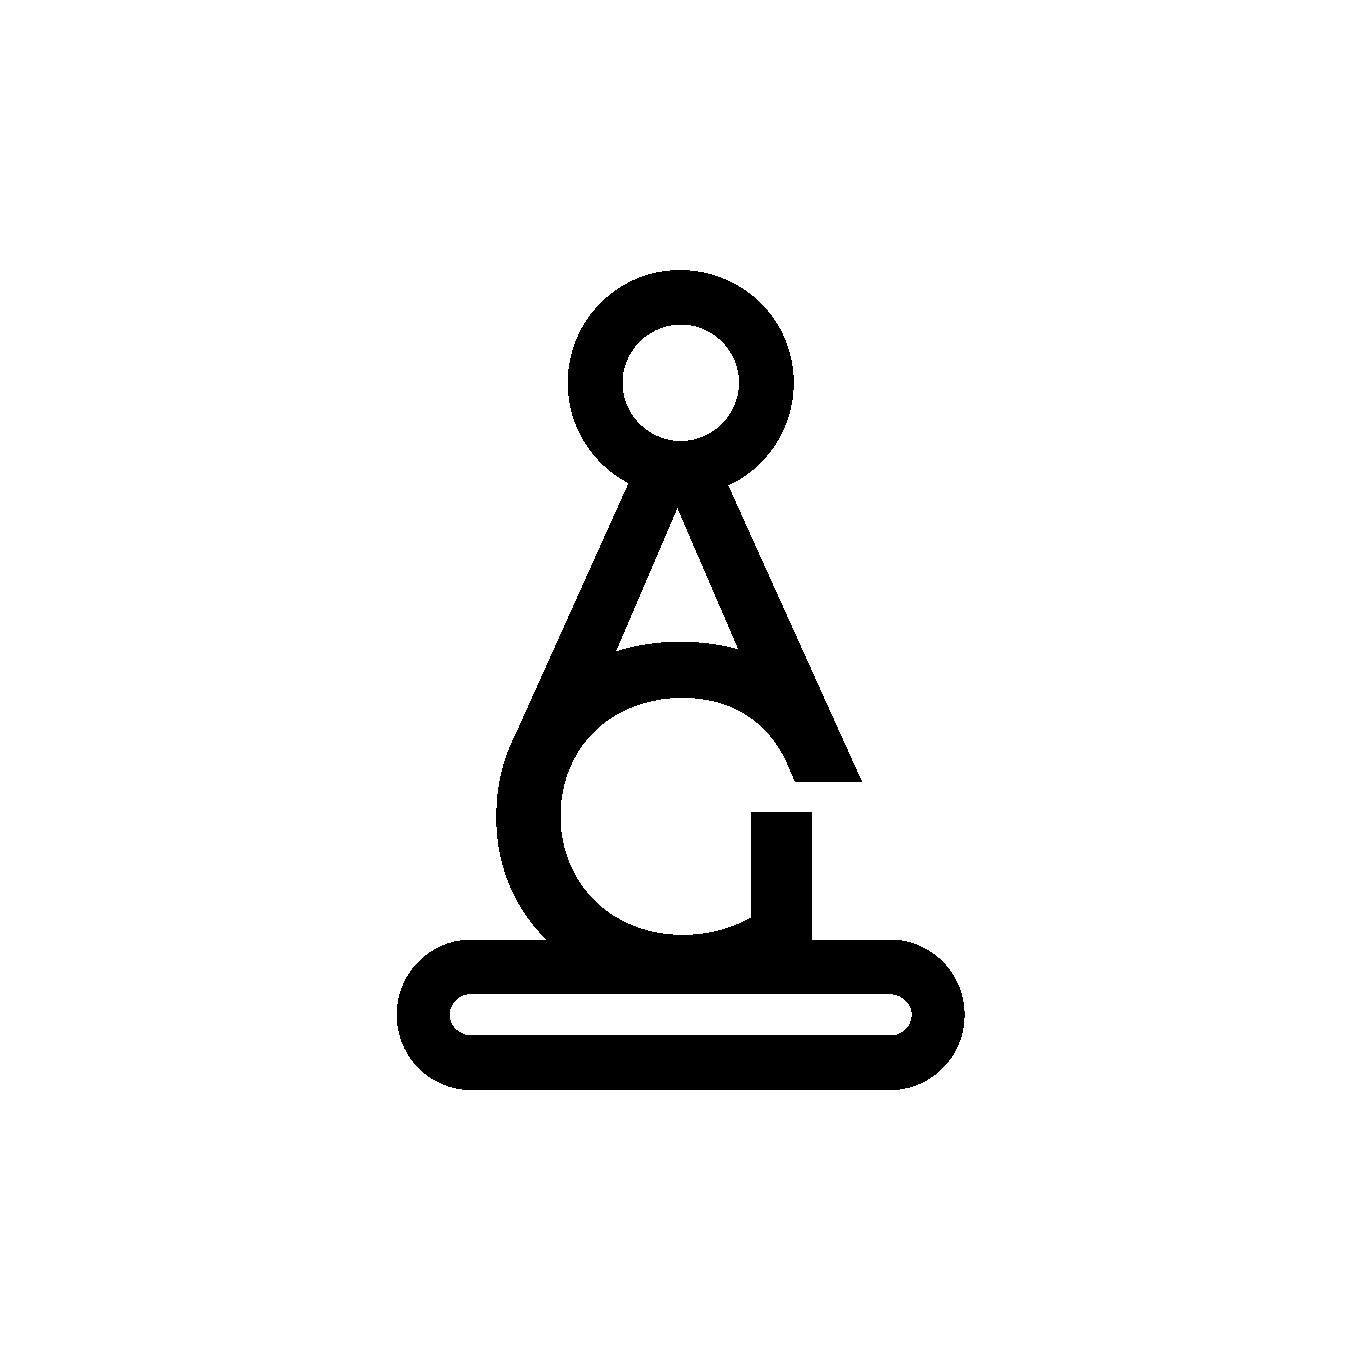 Piyon Siyah Logo, PNG Formatında